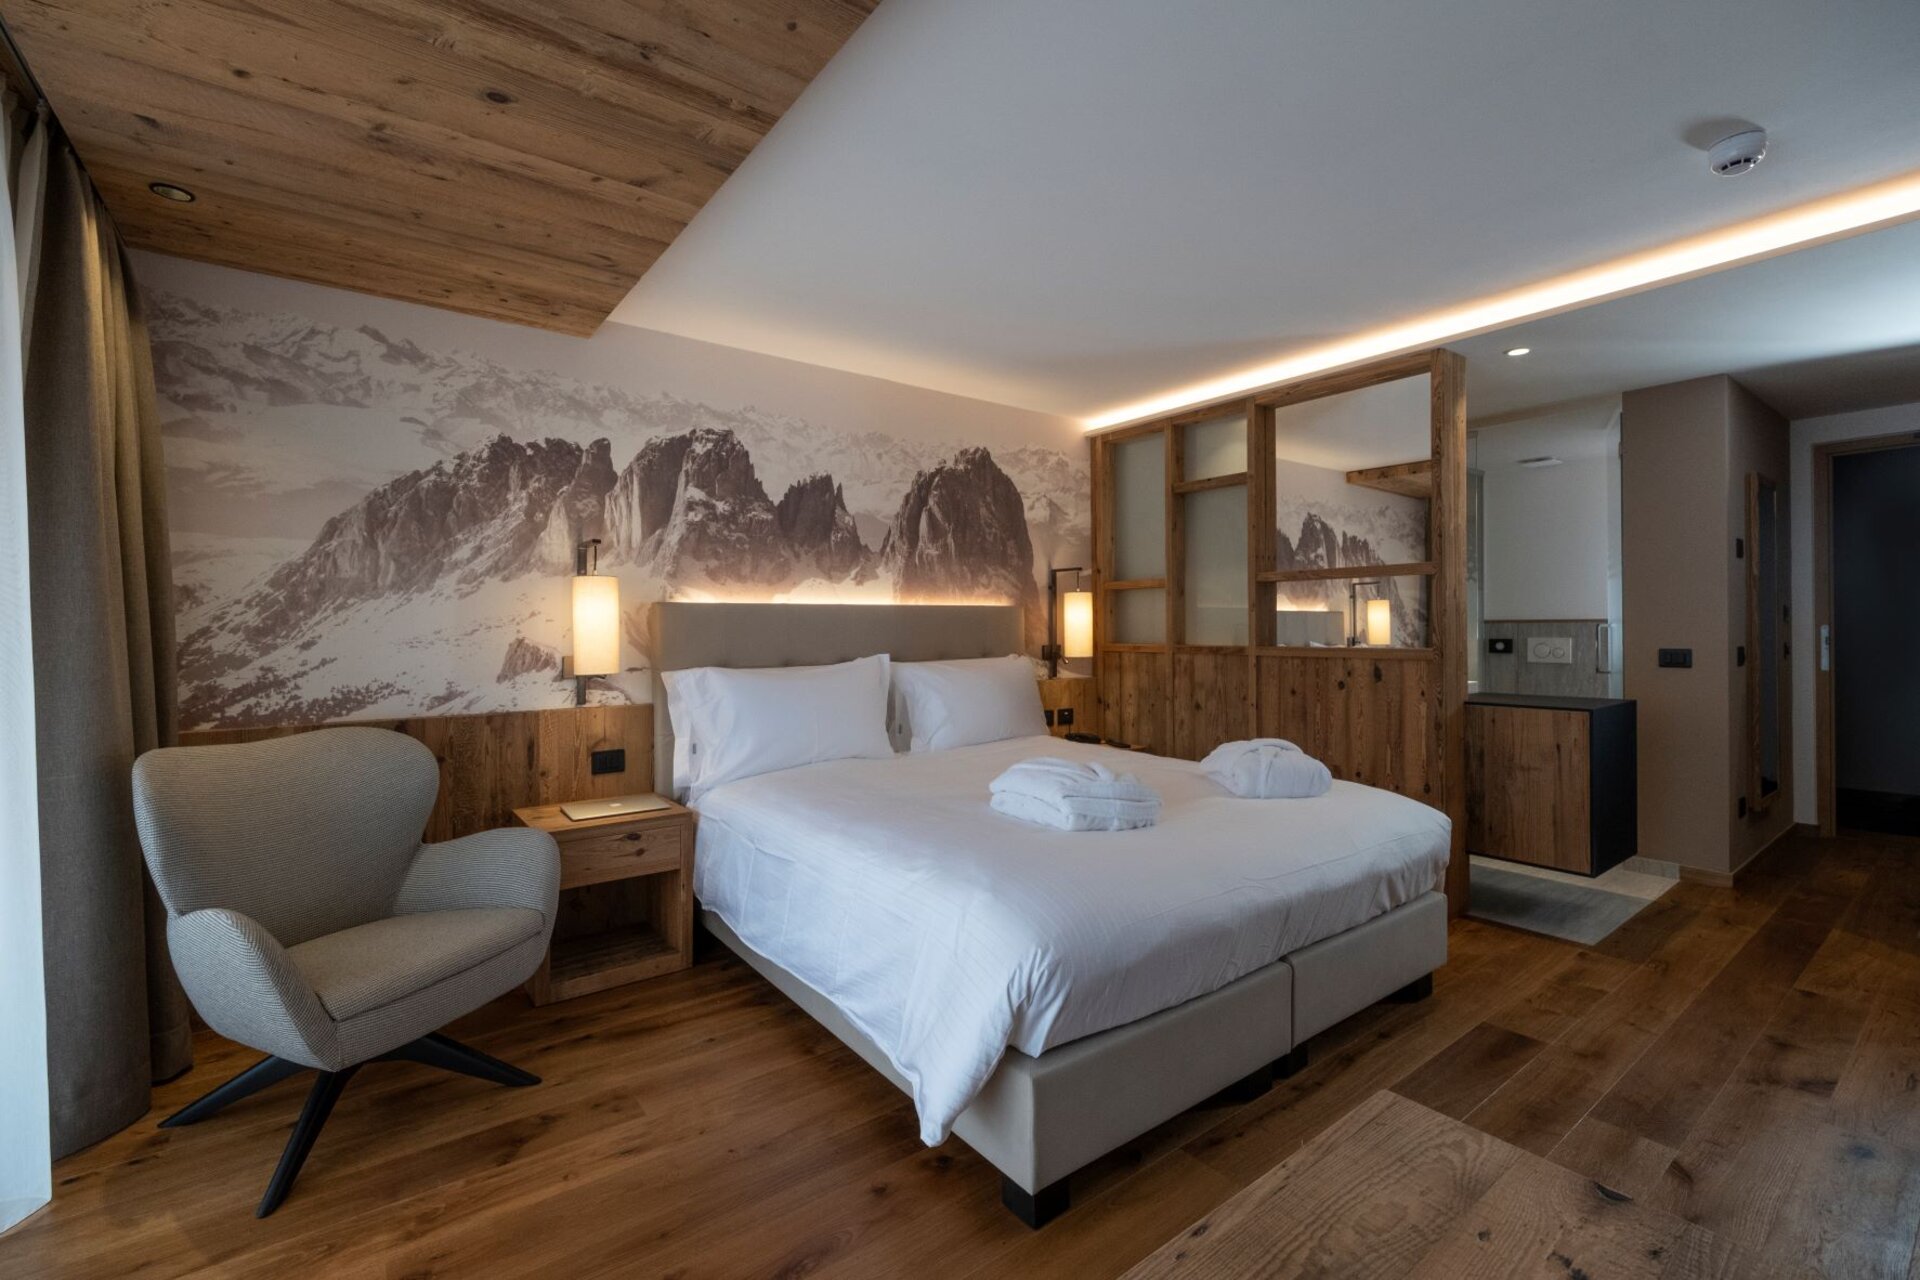 Camera di hotel arredata in legno con fotografia delle Dolomiti sullo sfondo | © Archivio Immagini ApT Val di Fassa